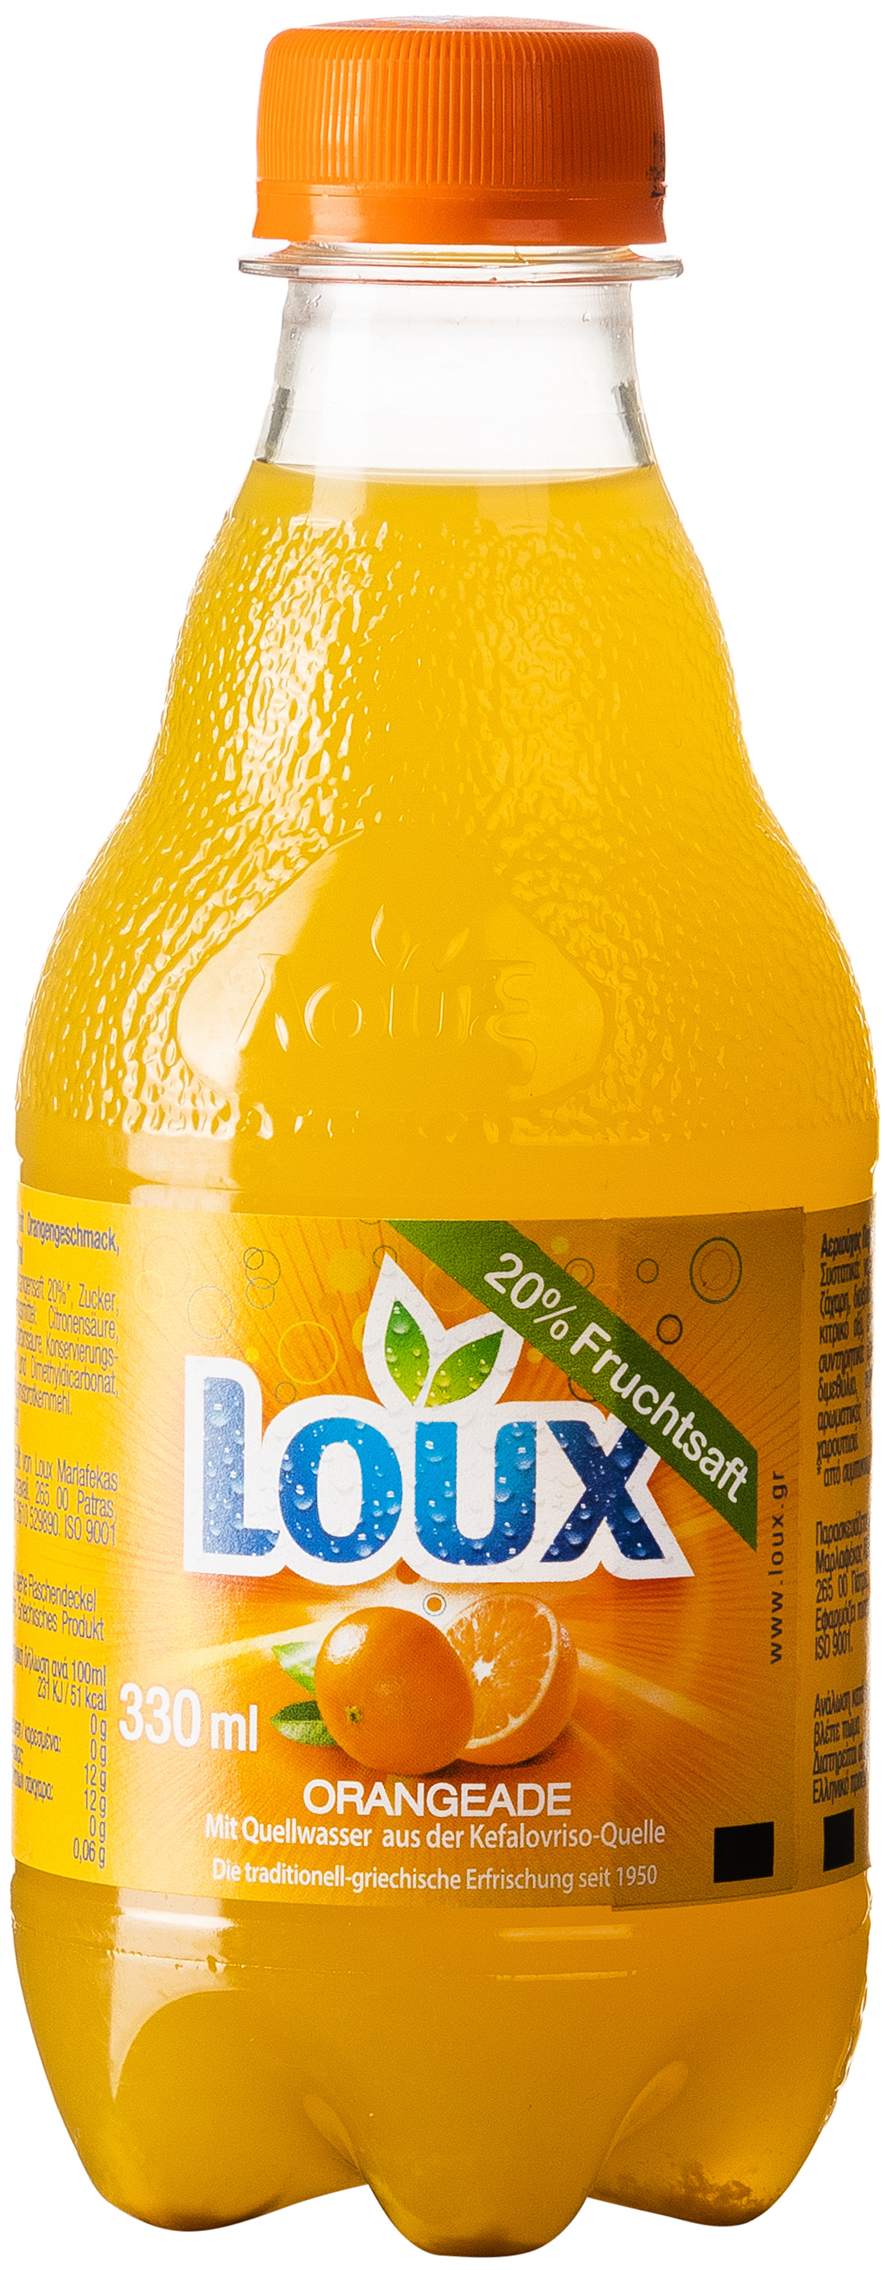 Loux Orangen Limonade 0,33L EINWEG